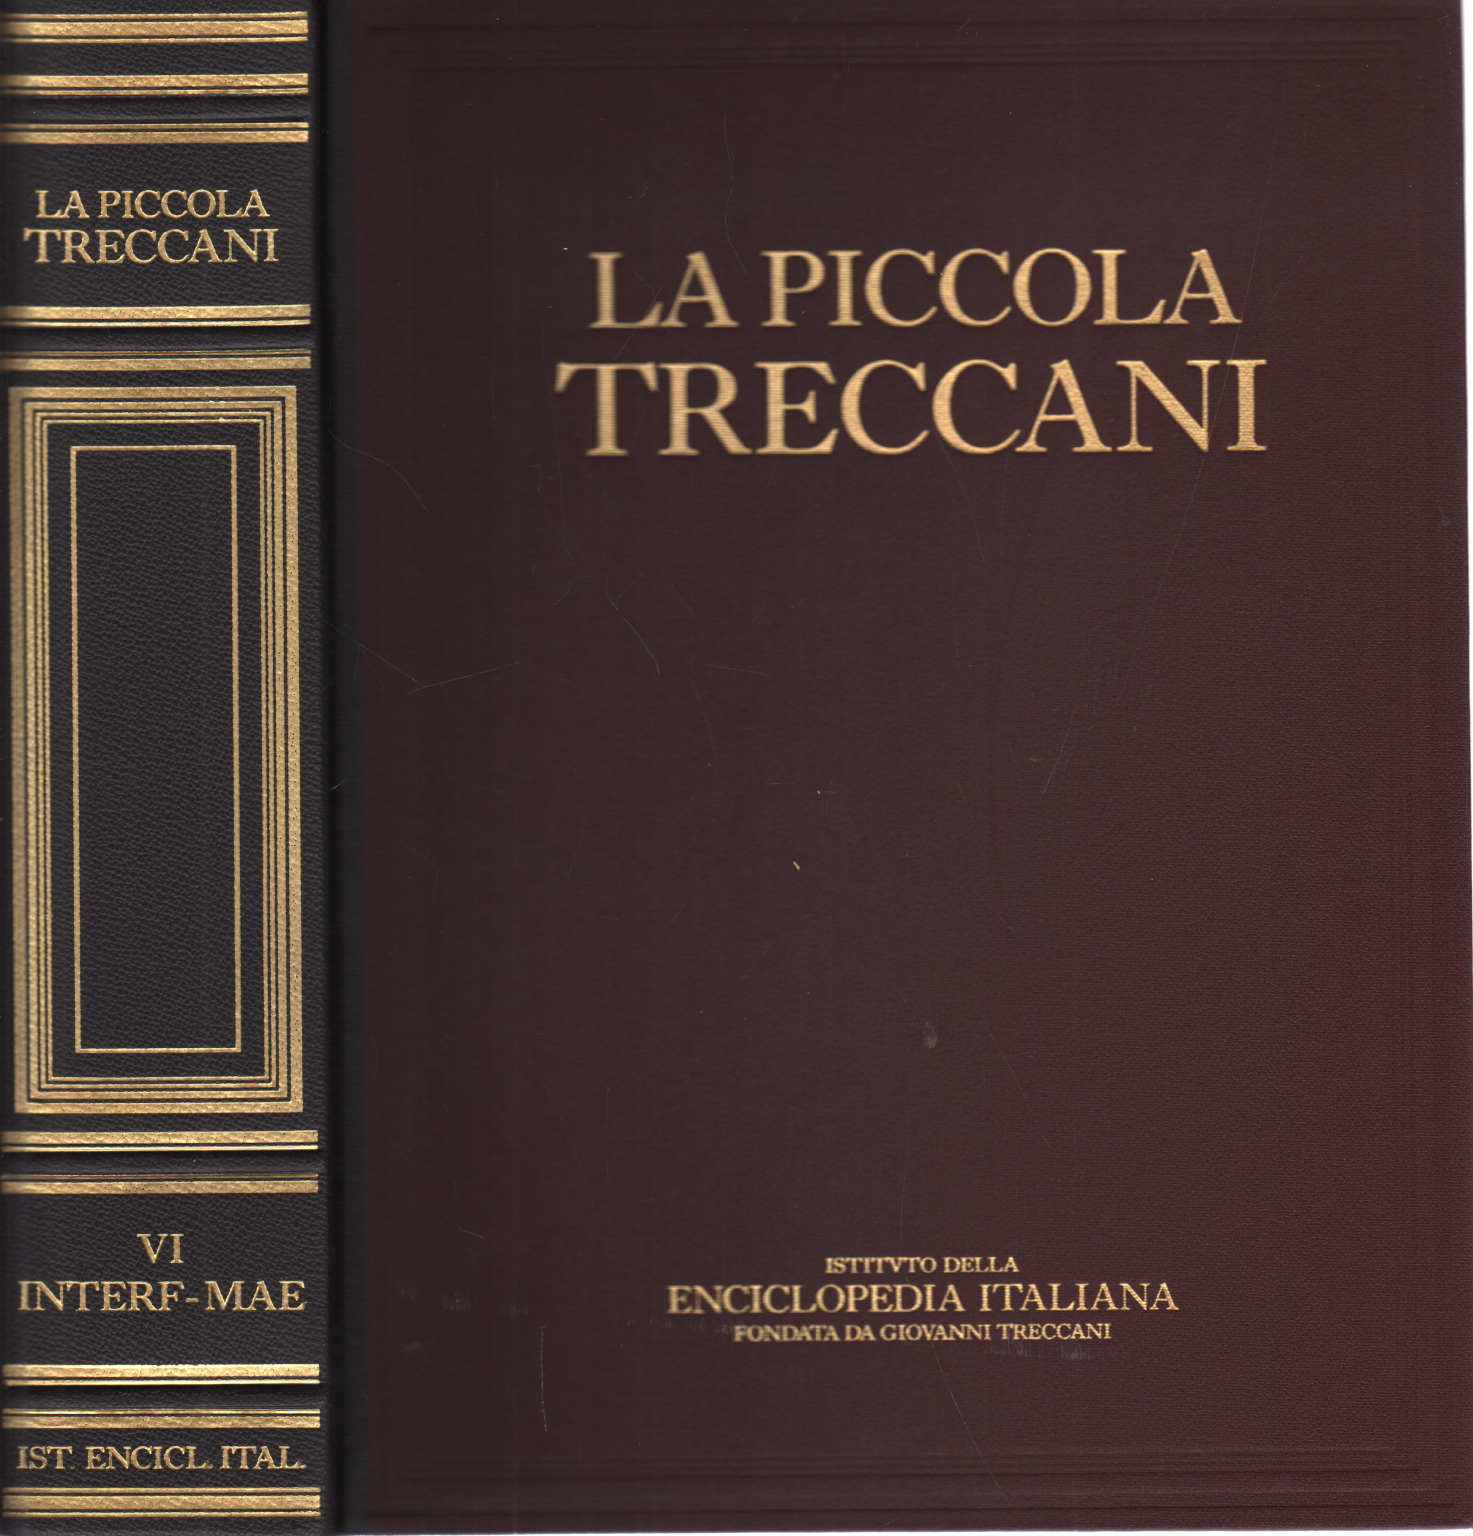 La Piccola Treccani VI Interf-Mae